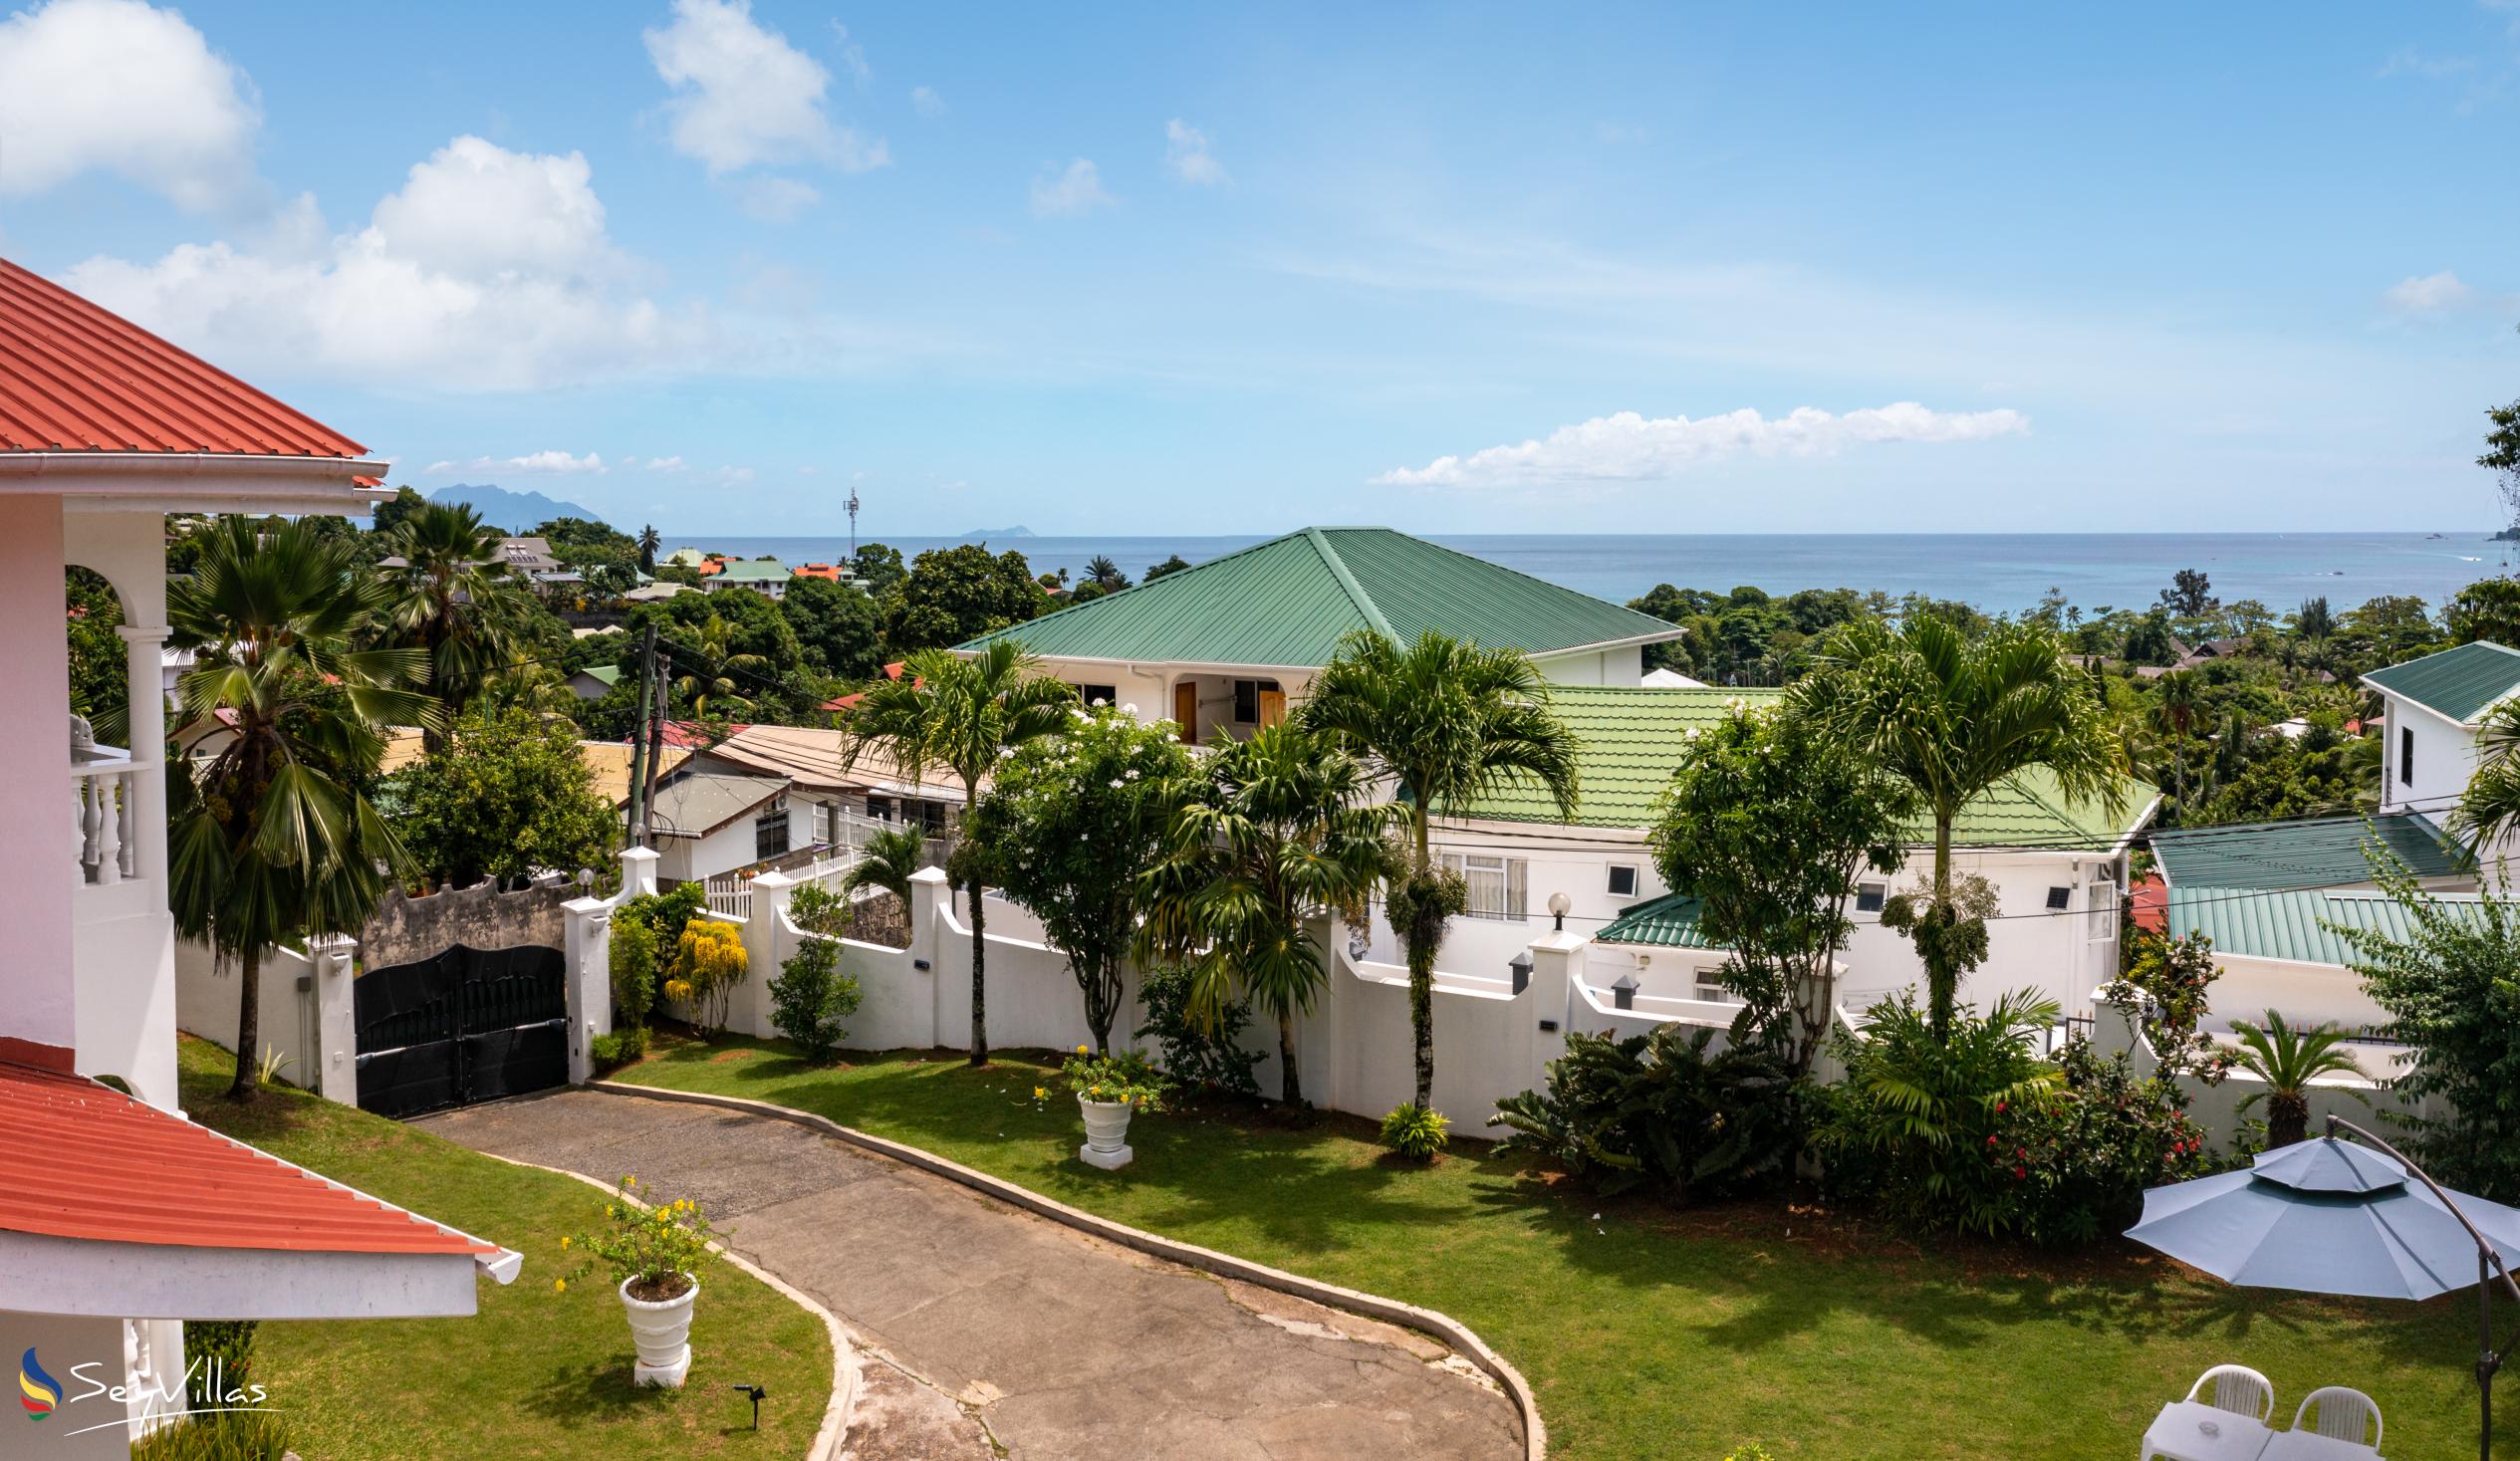 Foto 2: Villa Verde - Aussenbereich - Mahé (Seychellen)